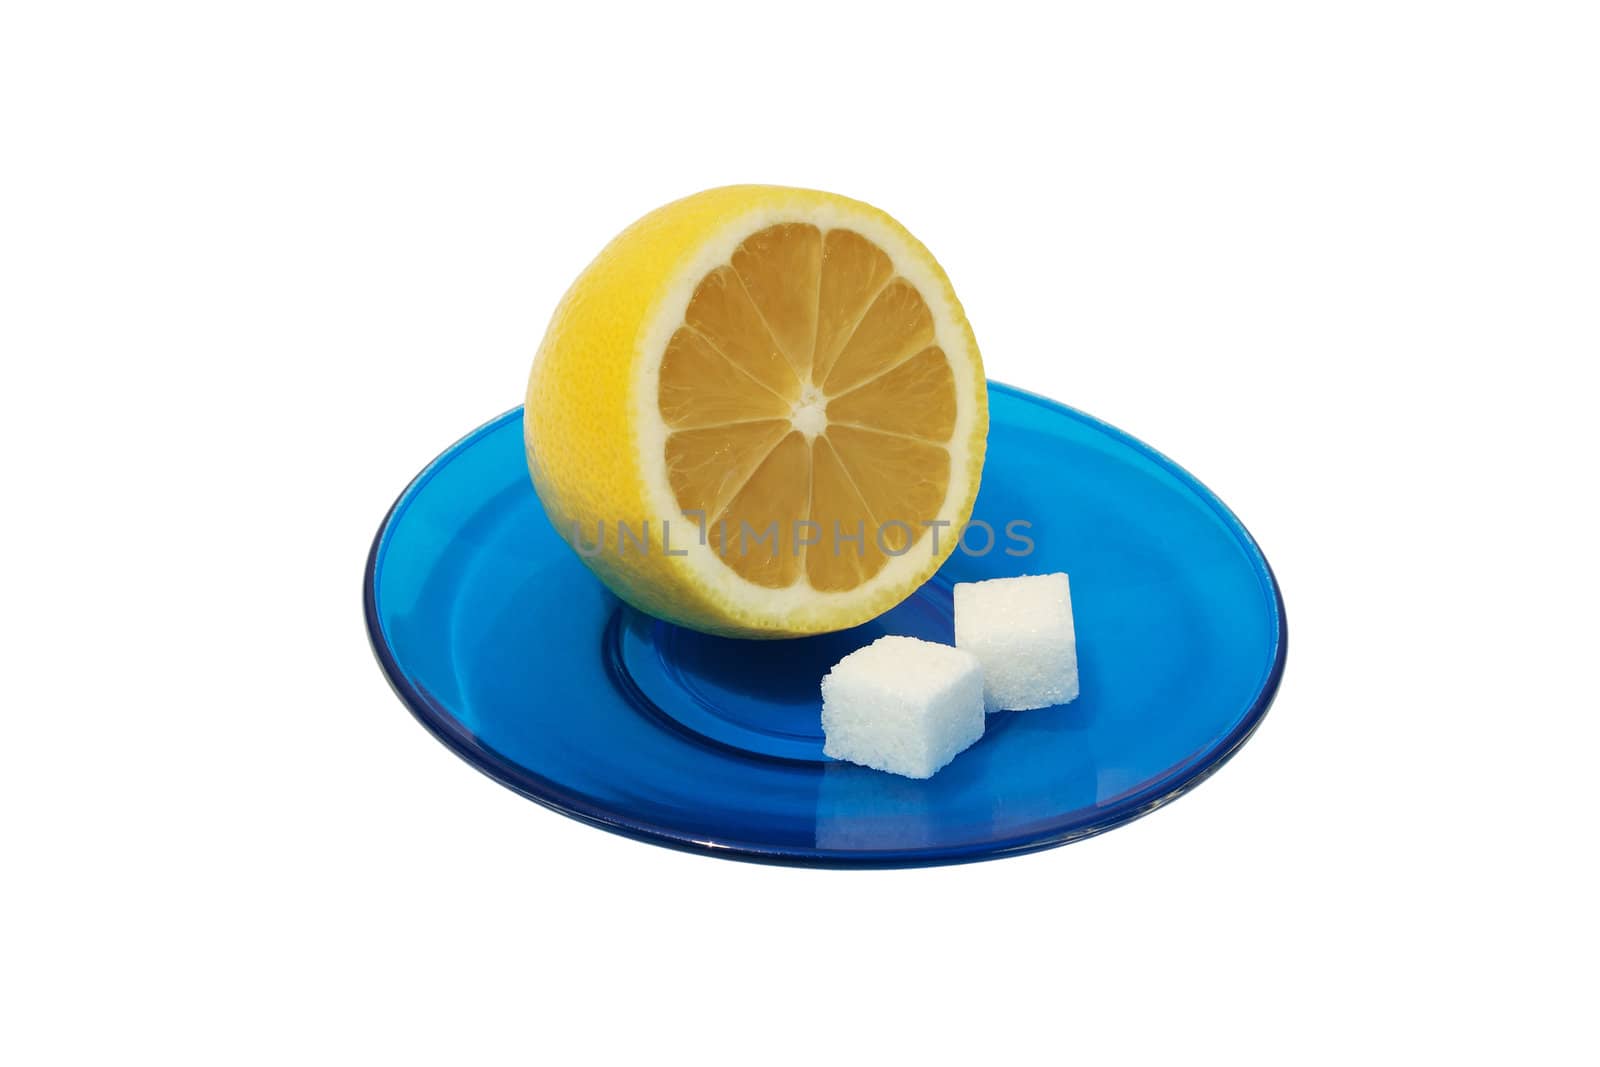 Lemon and sugar. by ekipaj